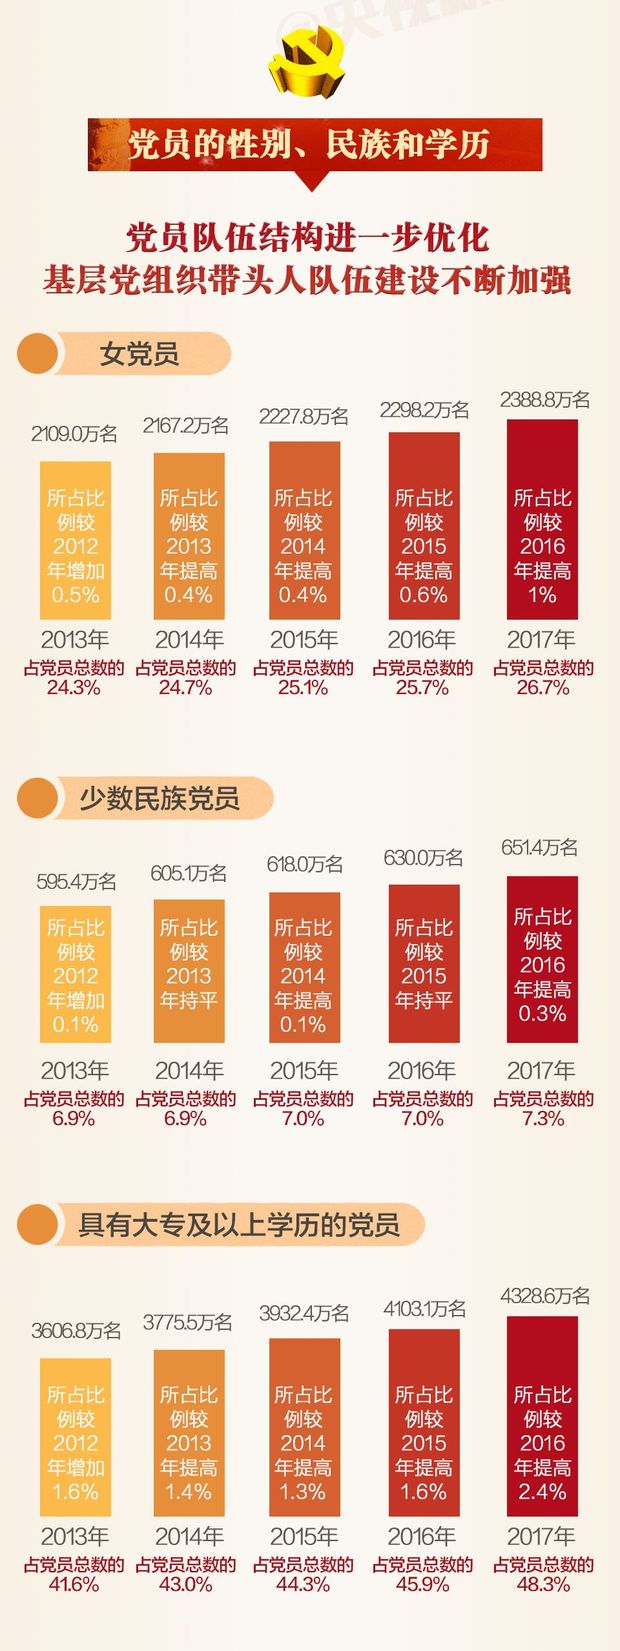 一張圖，帶你讀懂2017年中國共産黨黨內統計公報